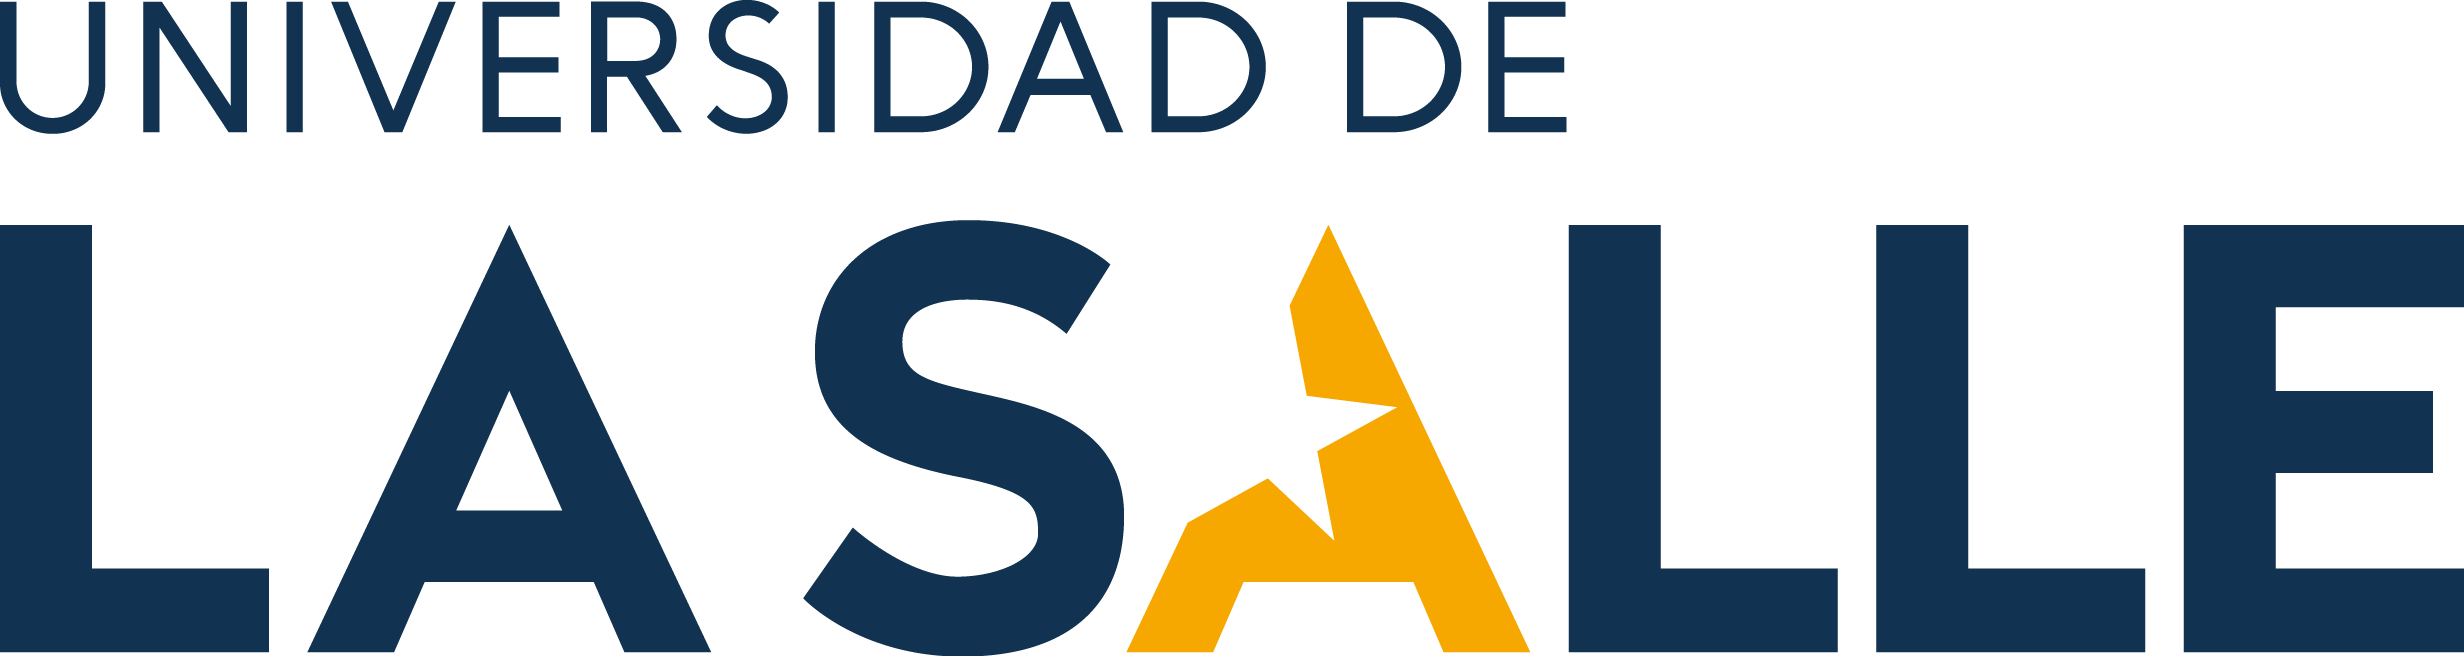 Logo_Universidad-de-La-Salle_sin-fondo